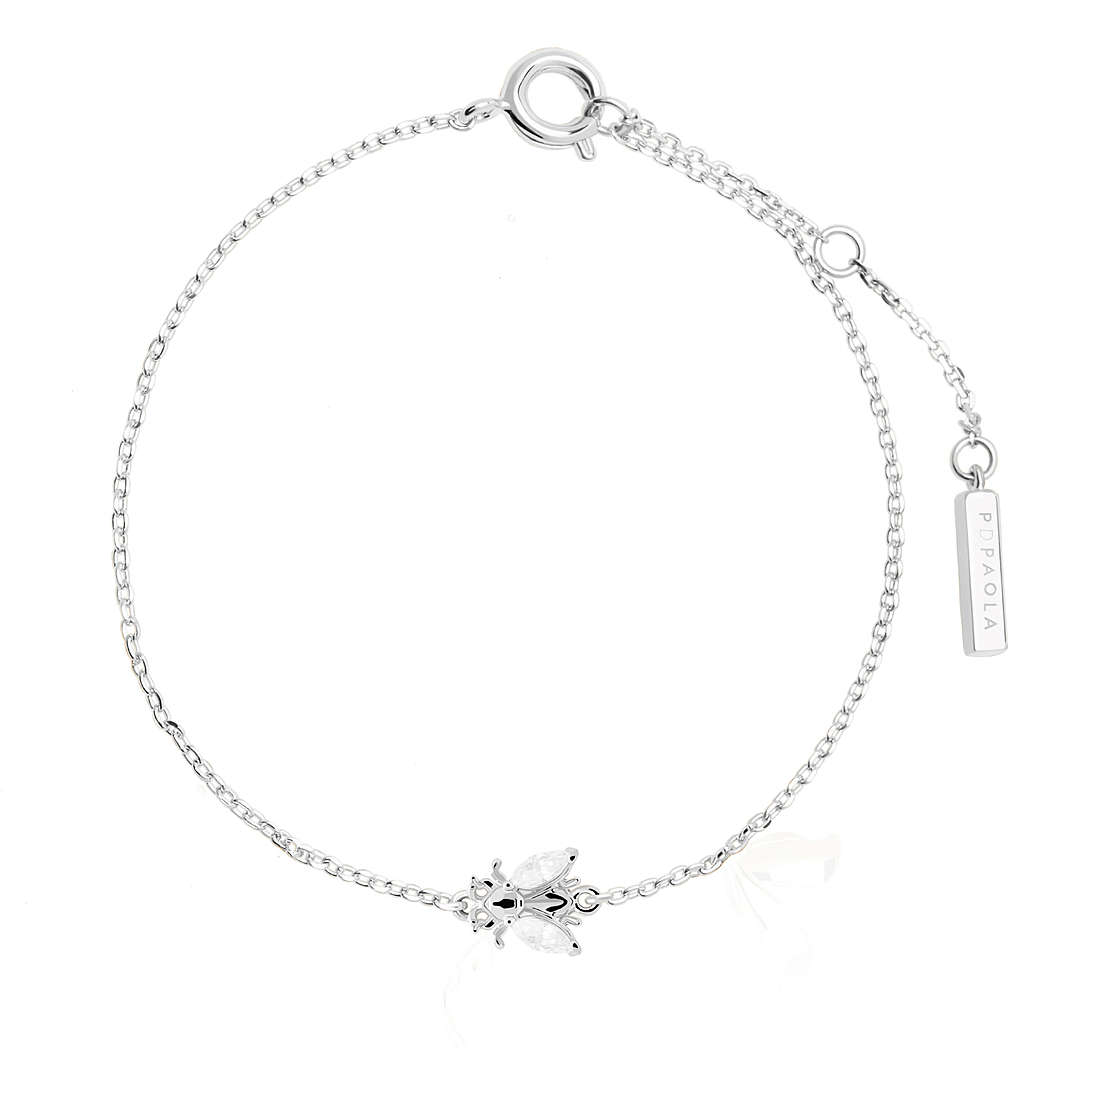 Armband Charms/Beads frau Silber 925 Schmuck PDPaola Zaza PU02-122-U